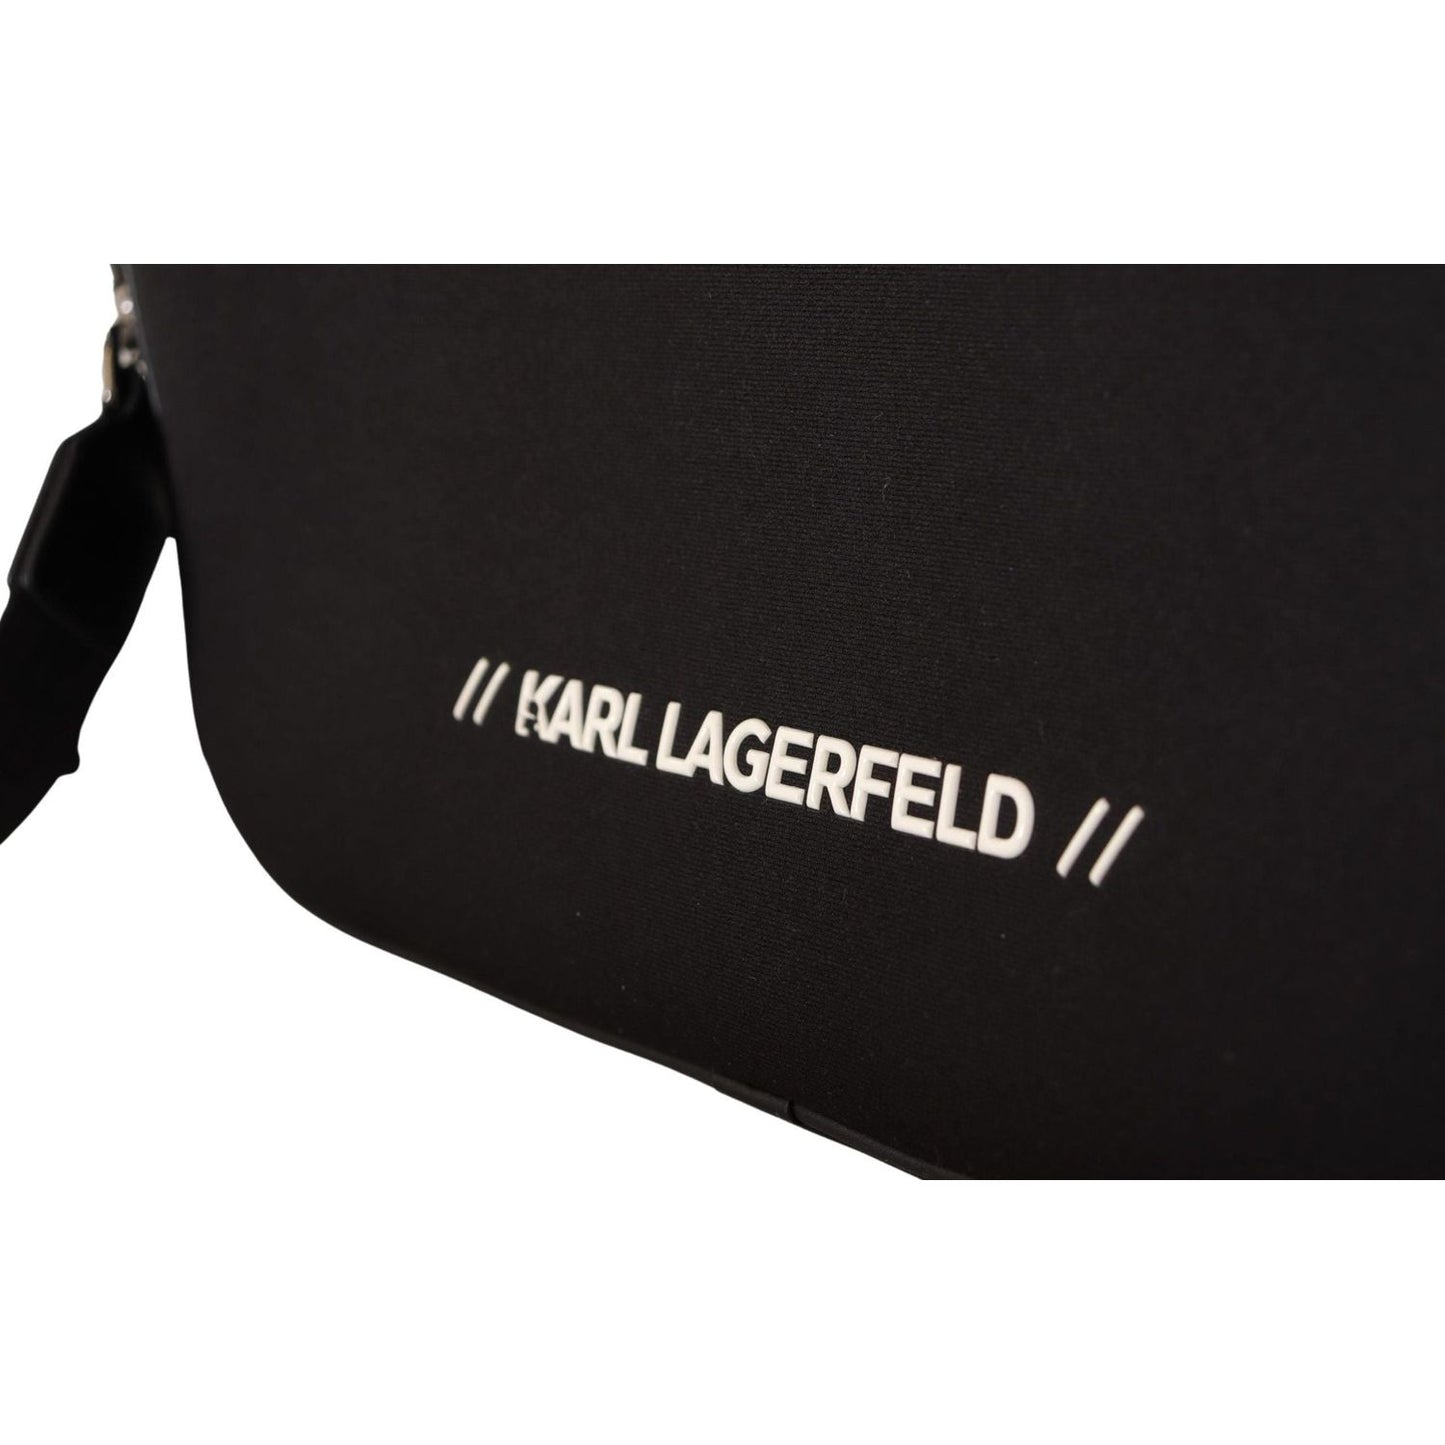 Karl Lagerfeld brand new laptop bag (European design)